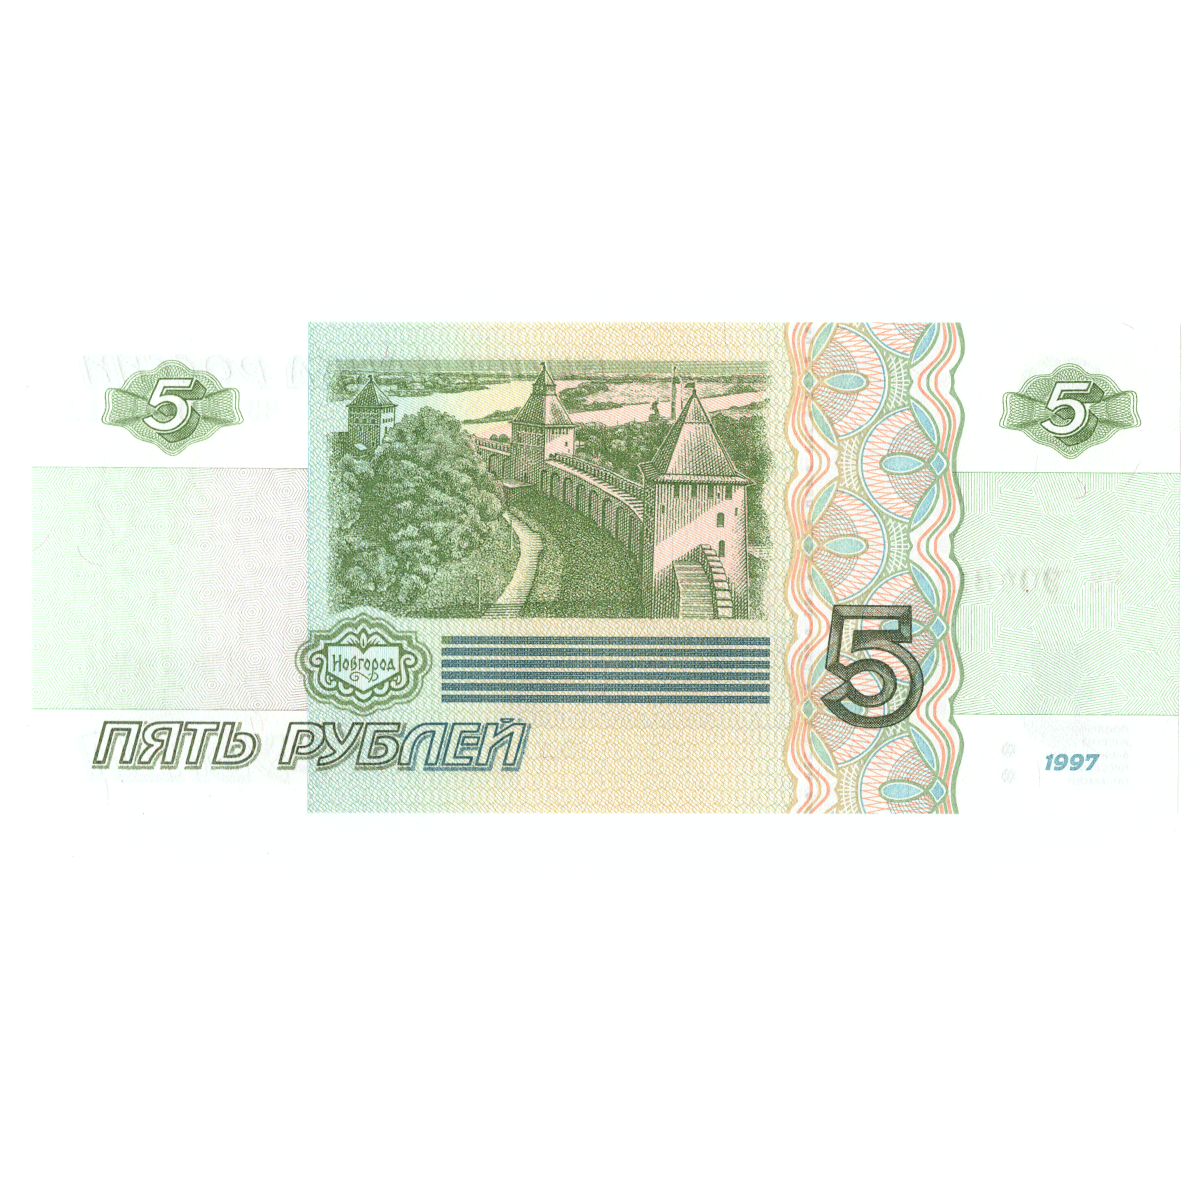 5 рублей 1997 банкнота Красивый номер чз 9048111. Пресс.